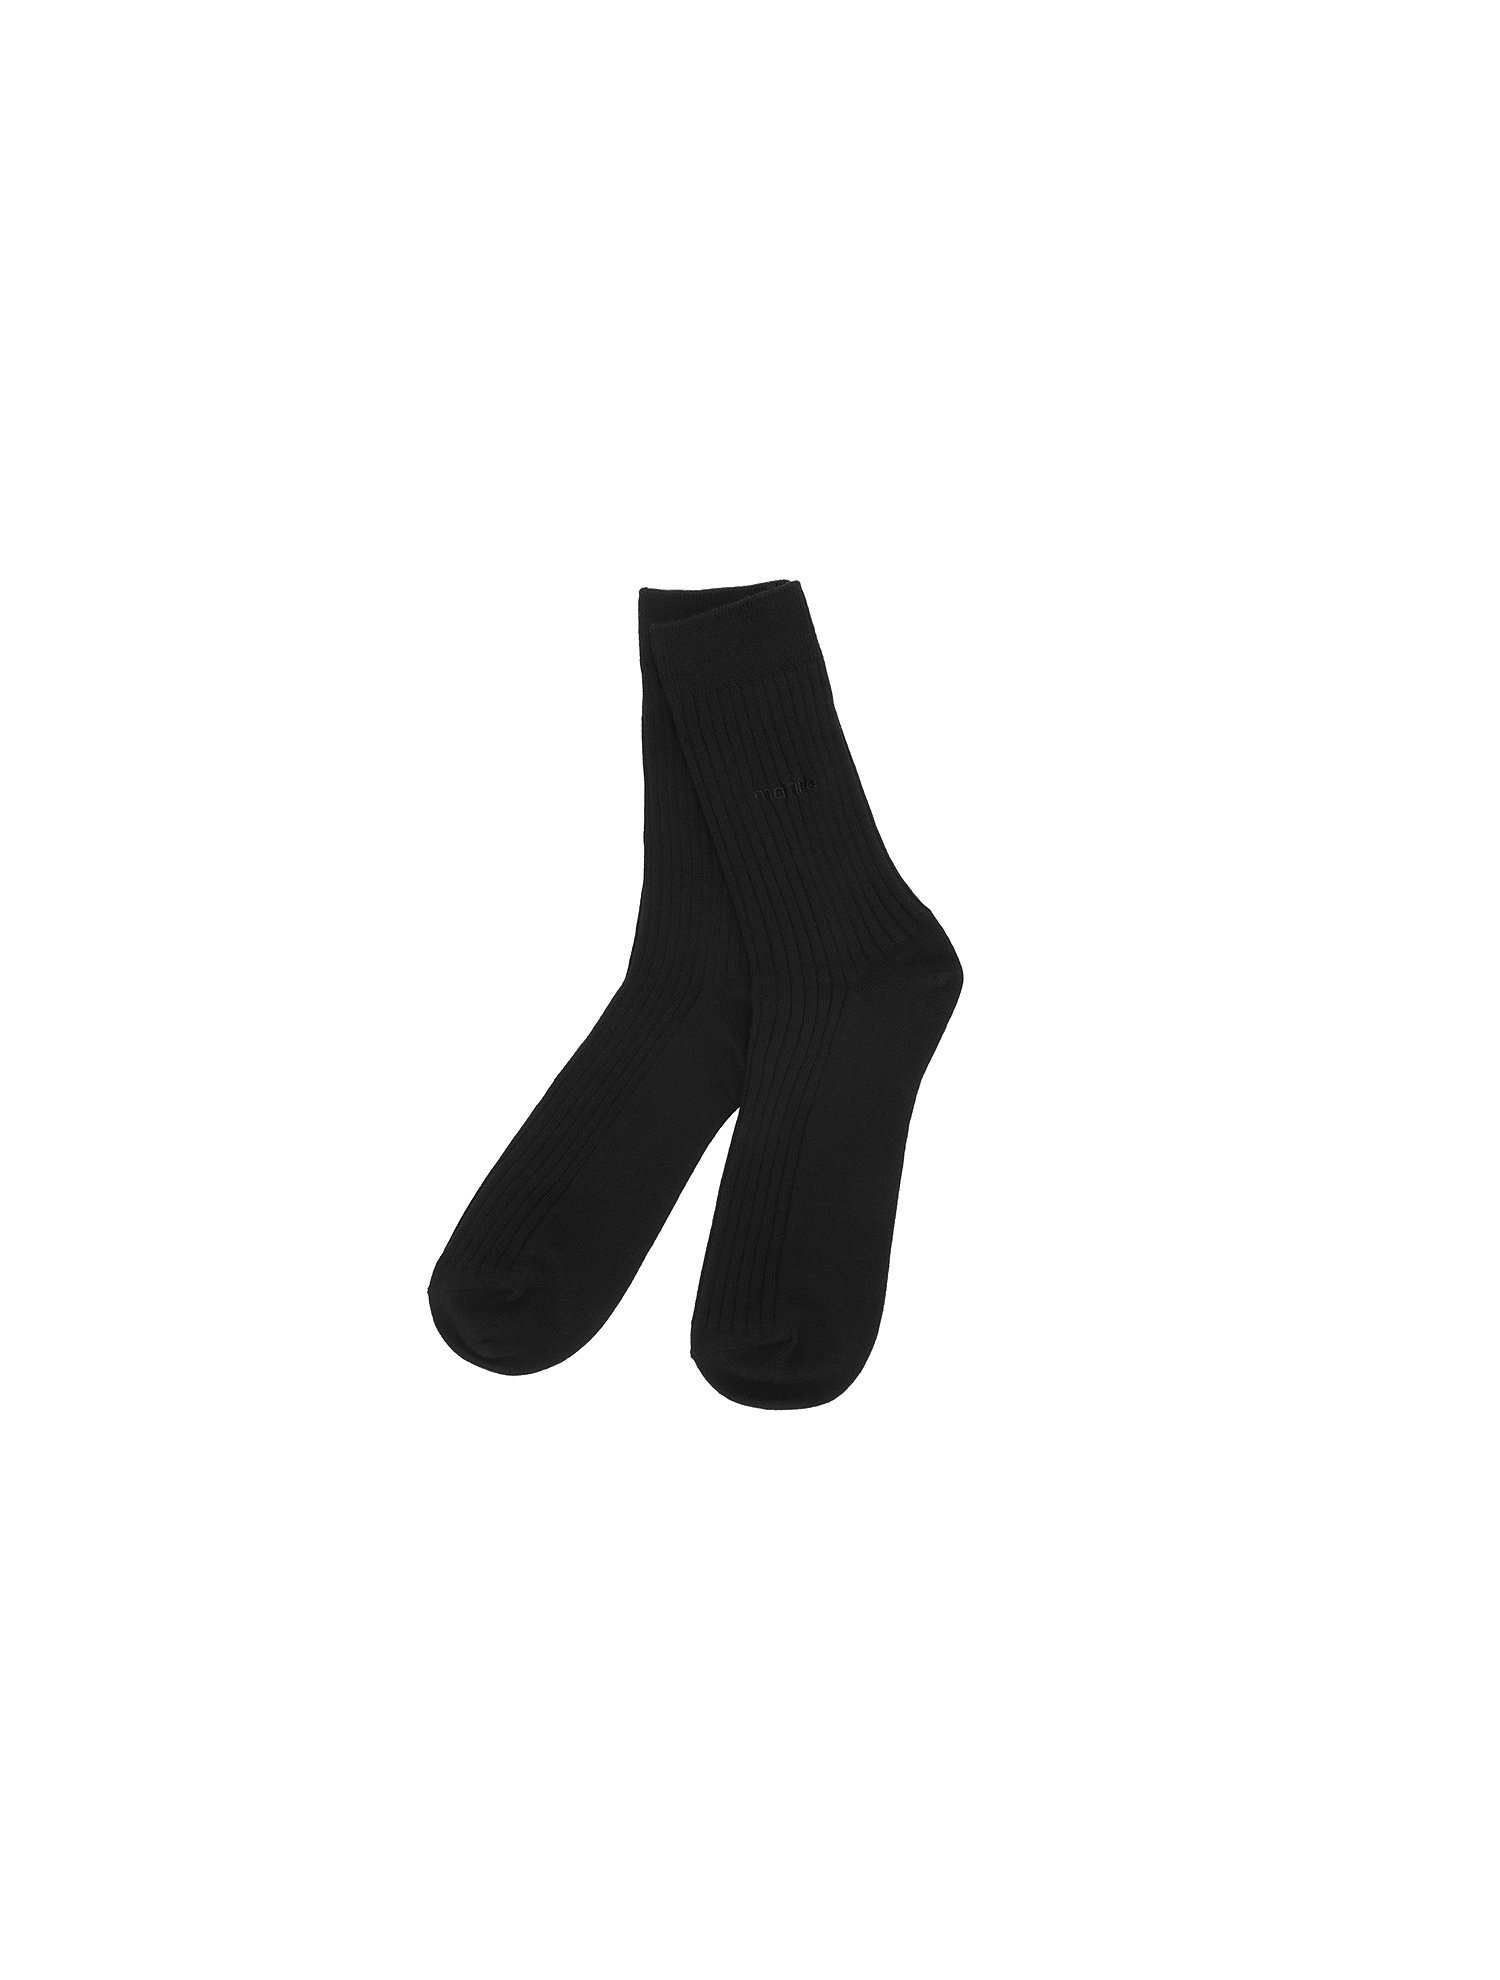 Basic Middle Socks_Black (Men) (QMAESC10739)